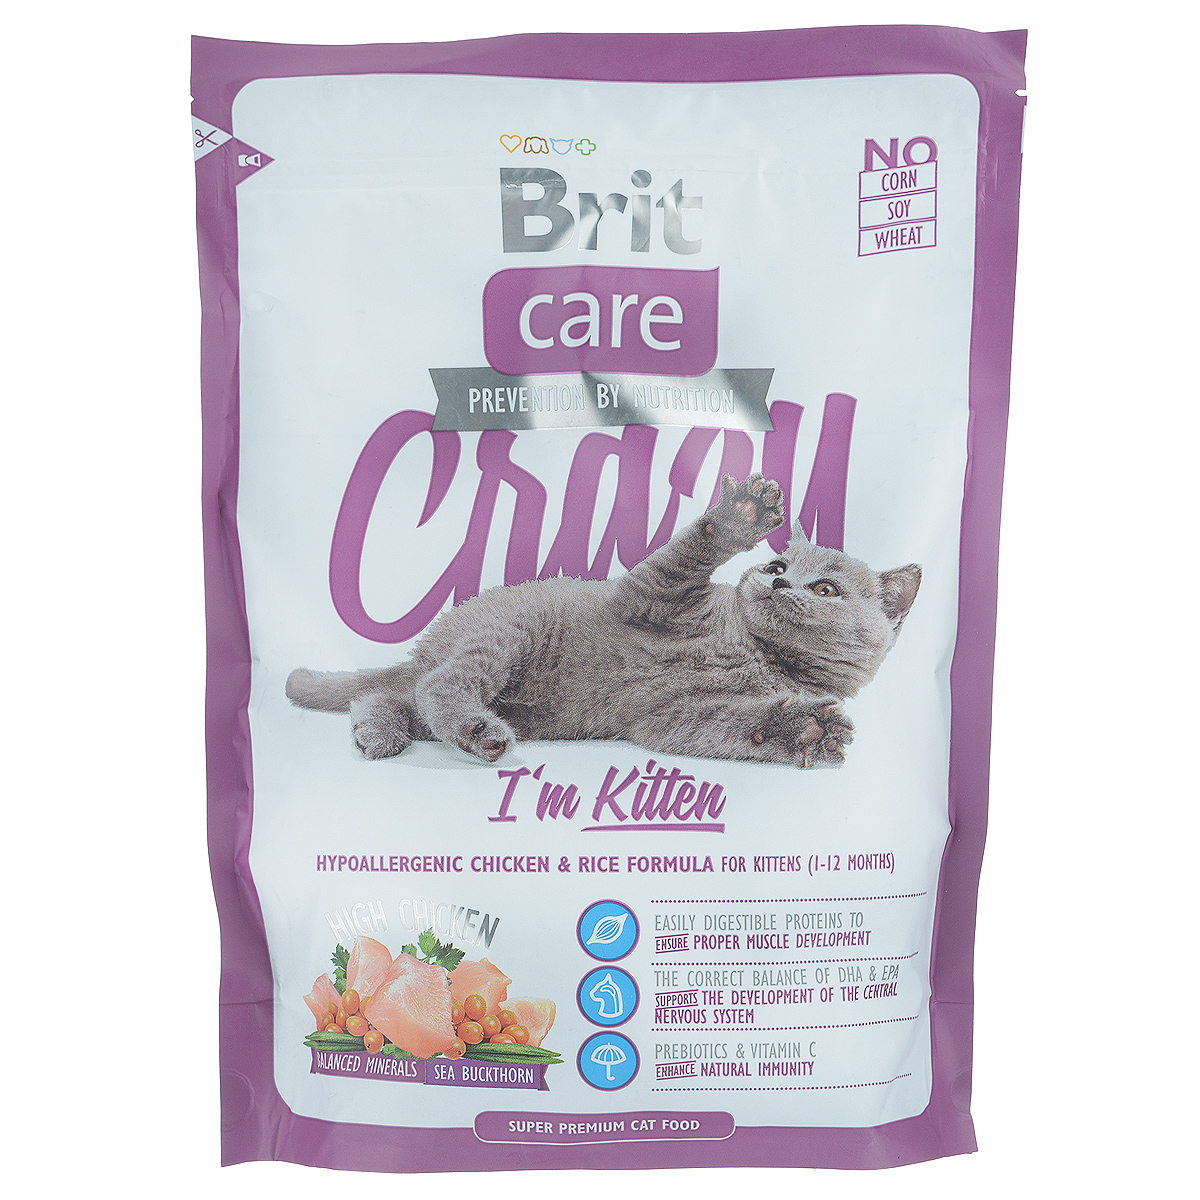 Брит: корм для кошек и котят, сухой и влажный